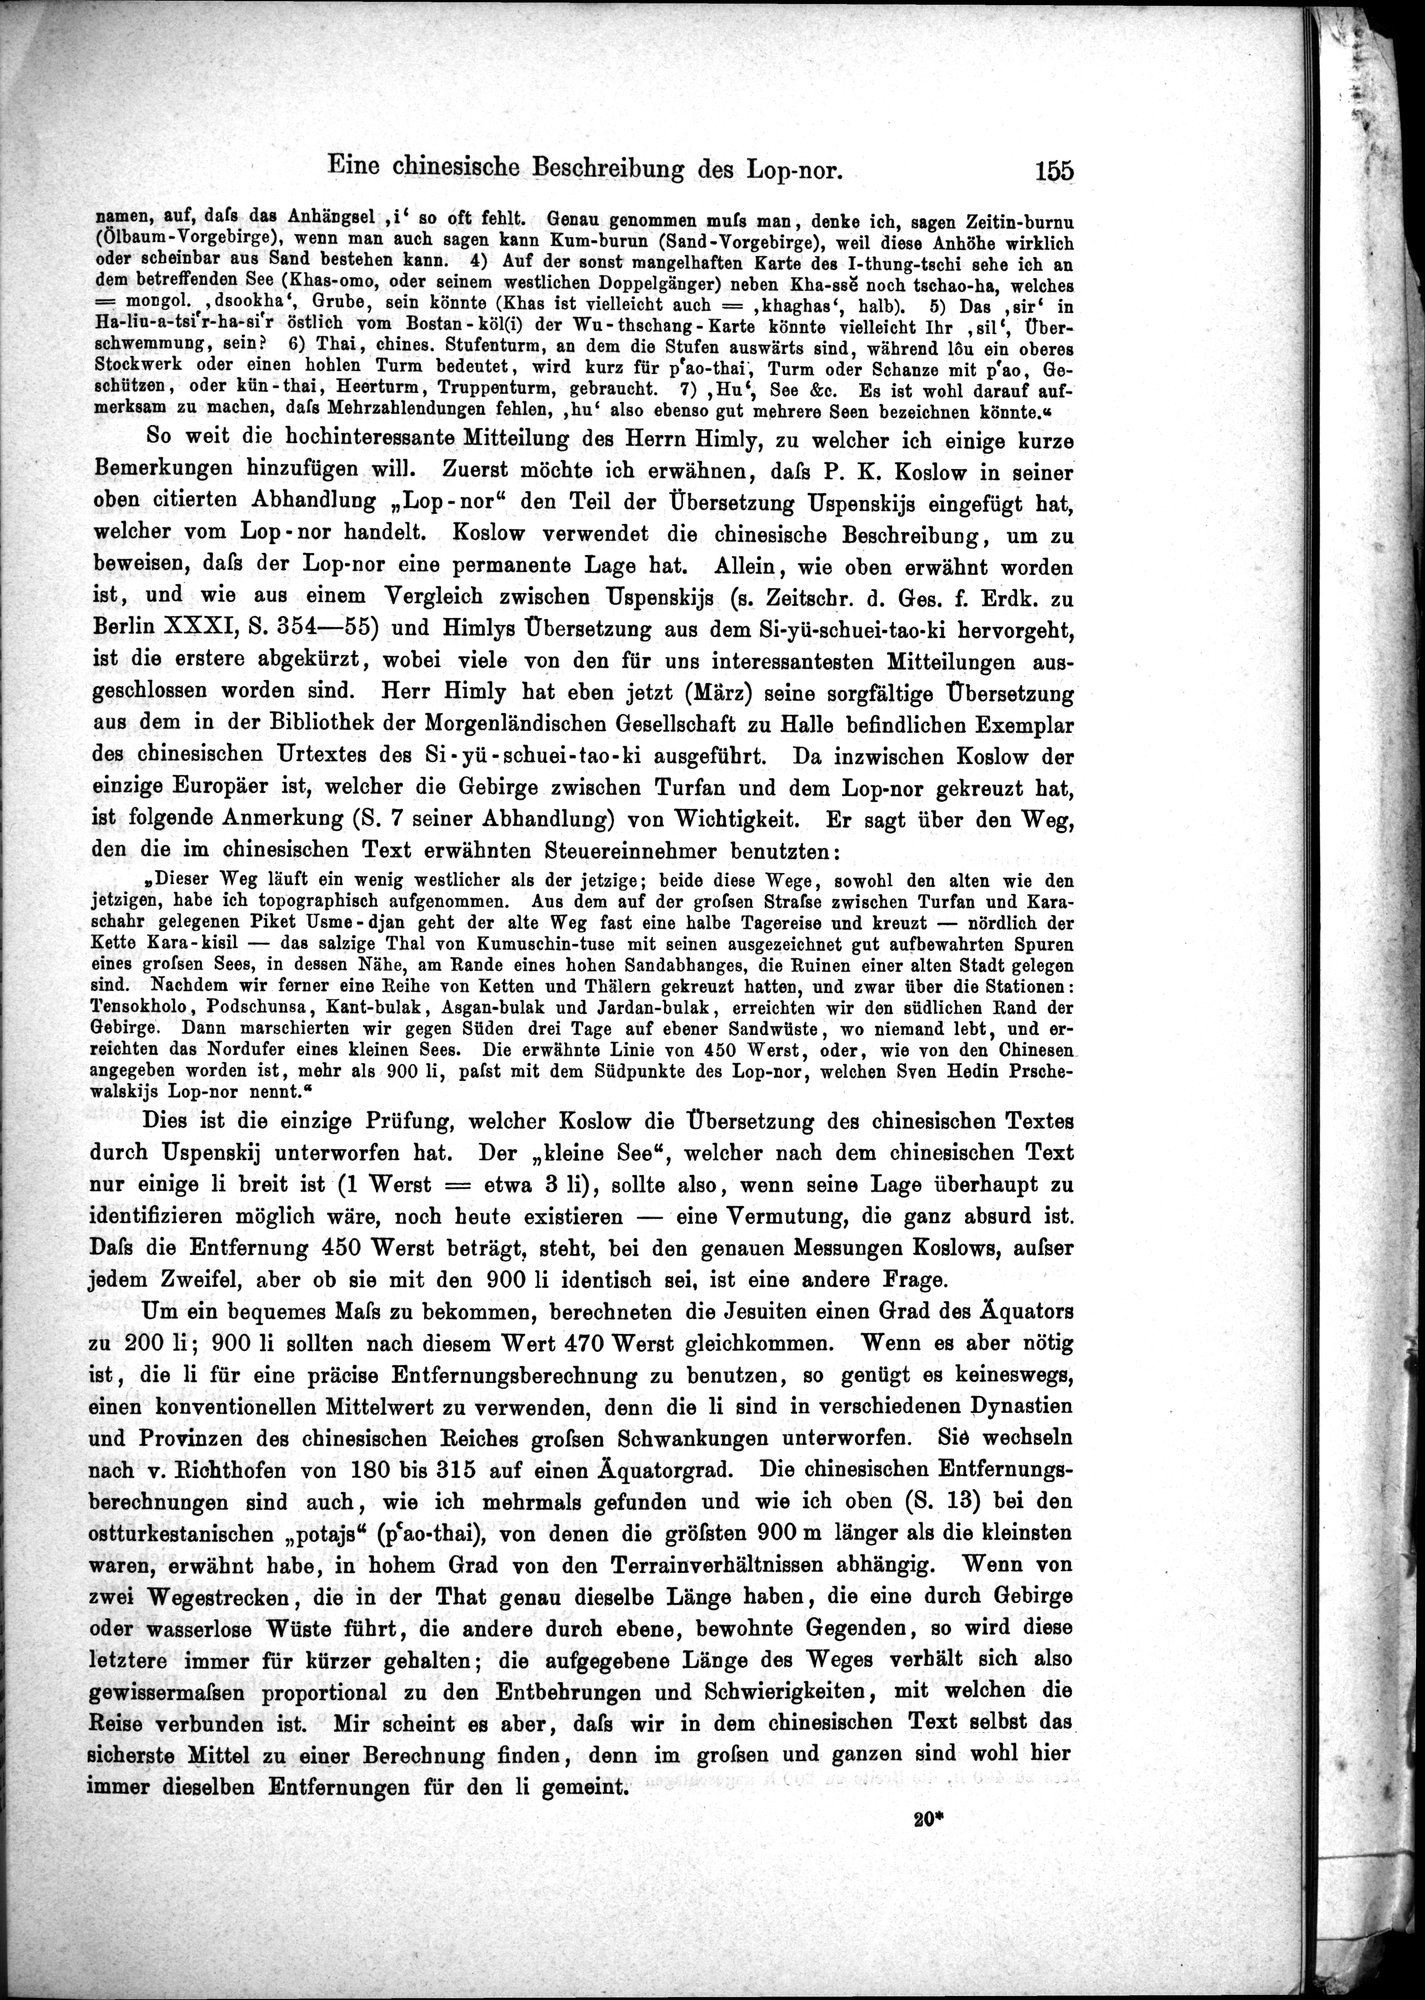 Die Geographische-Wissenschaftlichen Ergebnisse meiner Reisen in Zentralasien, 1894-1897 : vol.1 / Page 167 (Grayscale High Resolution Image)